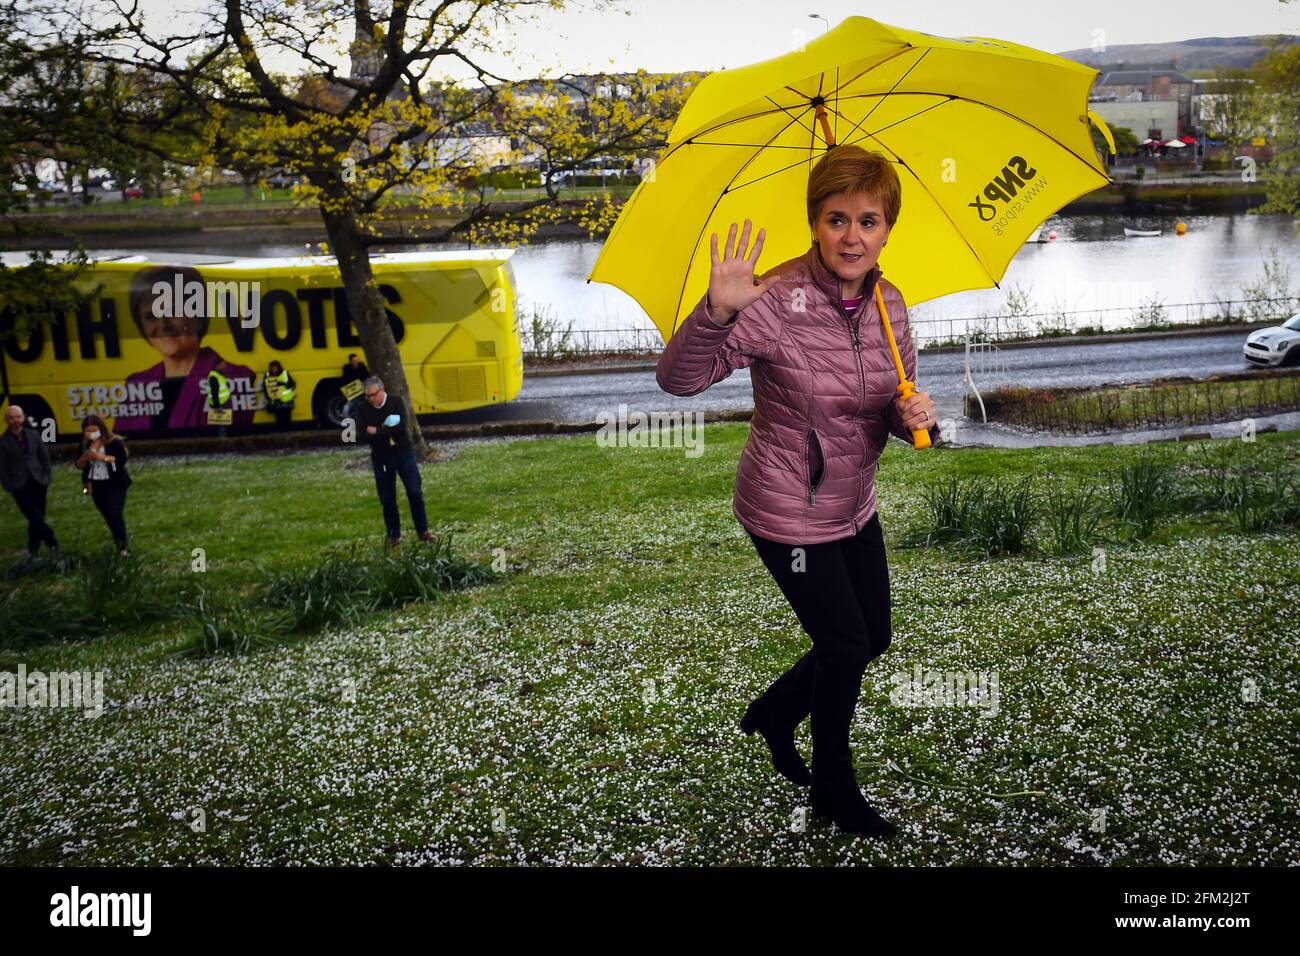 Die erste Ministerin Schottlands und Vorsitzende der Scottish National Party (SNP), Nicola Sturgeon, war in Dumbarton während des Wahlkampfs für die schottischen Parlamentswahlen. Bilddatum: Mittwoch, 5. Mai 2021. Stockfoto